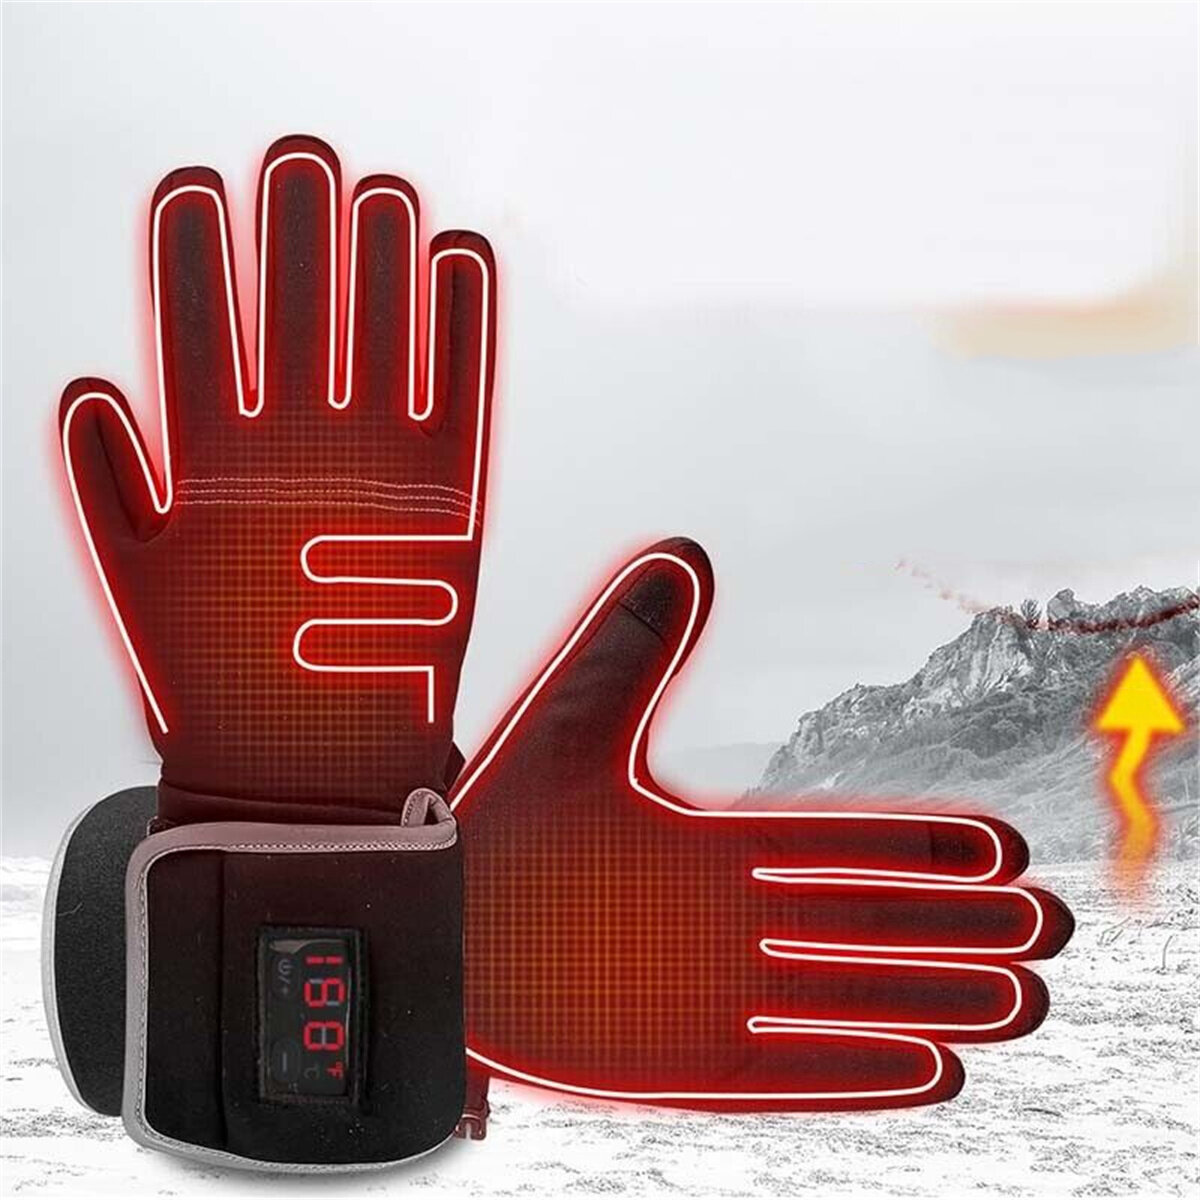 Электрические подогреваемые перчатки на аккумуляторах 2200 мАч водонепроницаемые, теплые для женщин и мужчин с LED-дисплеем температуры для спорта на открытом воздухе, лыж, мотоциклов, охоты